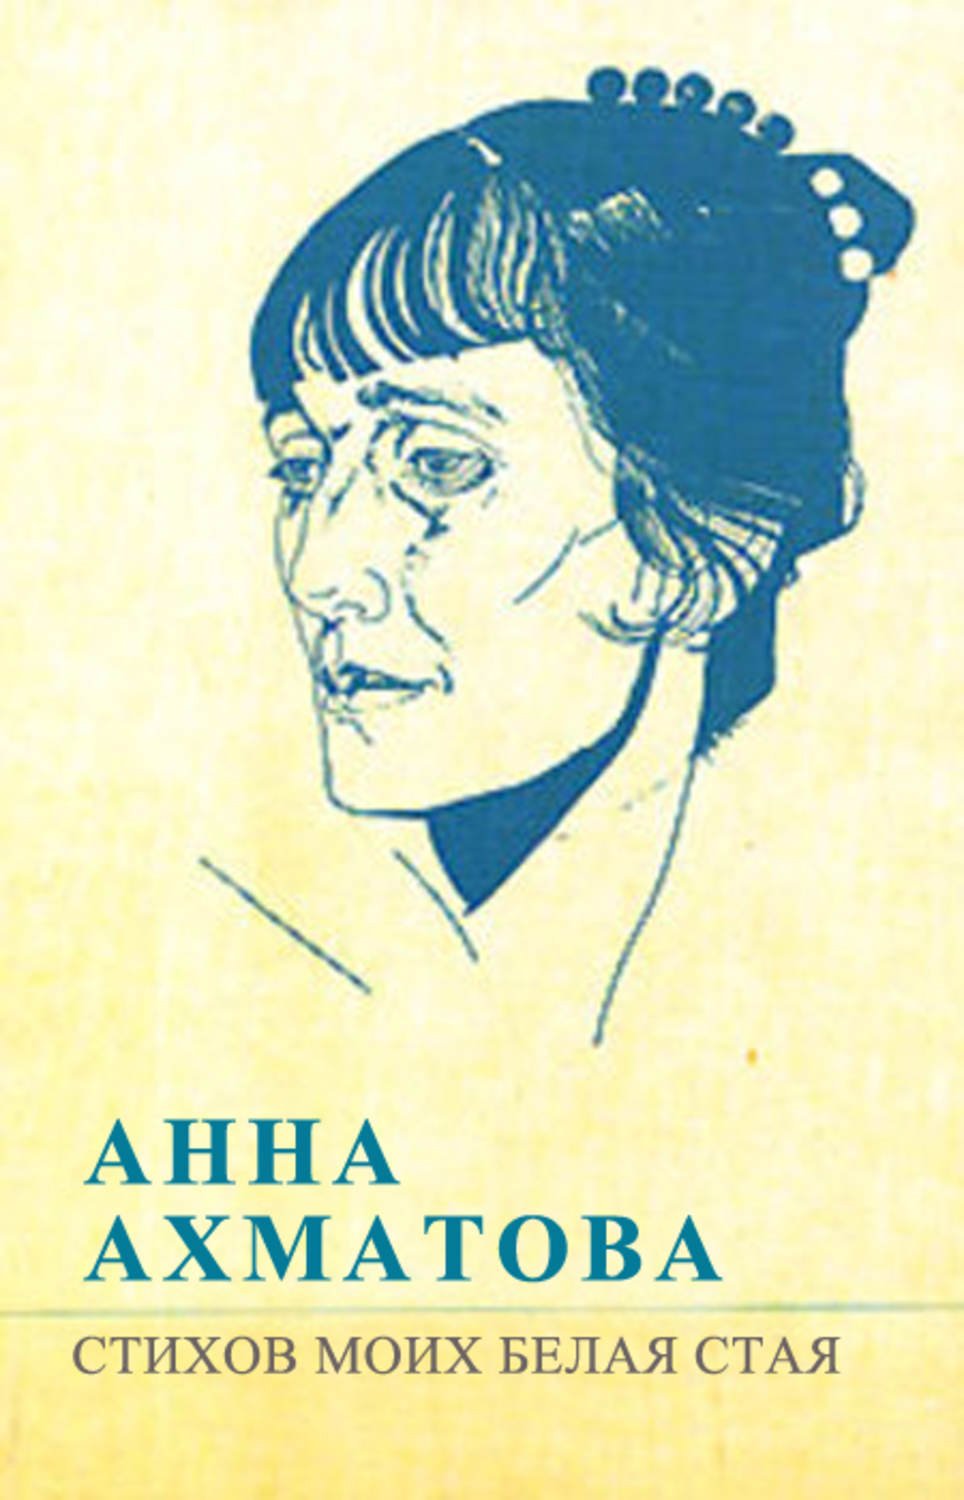 Первый опубликованный сборник стихов ахматовой. Книга стихов Анны Ахматовой белая стая. Сборник стихотворений Ахматовой белая стая.